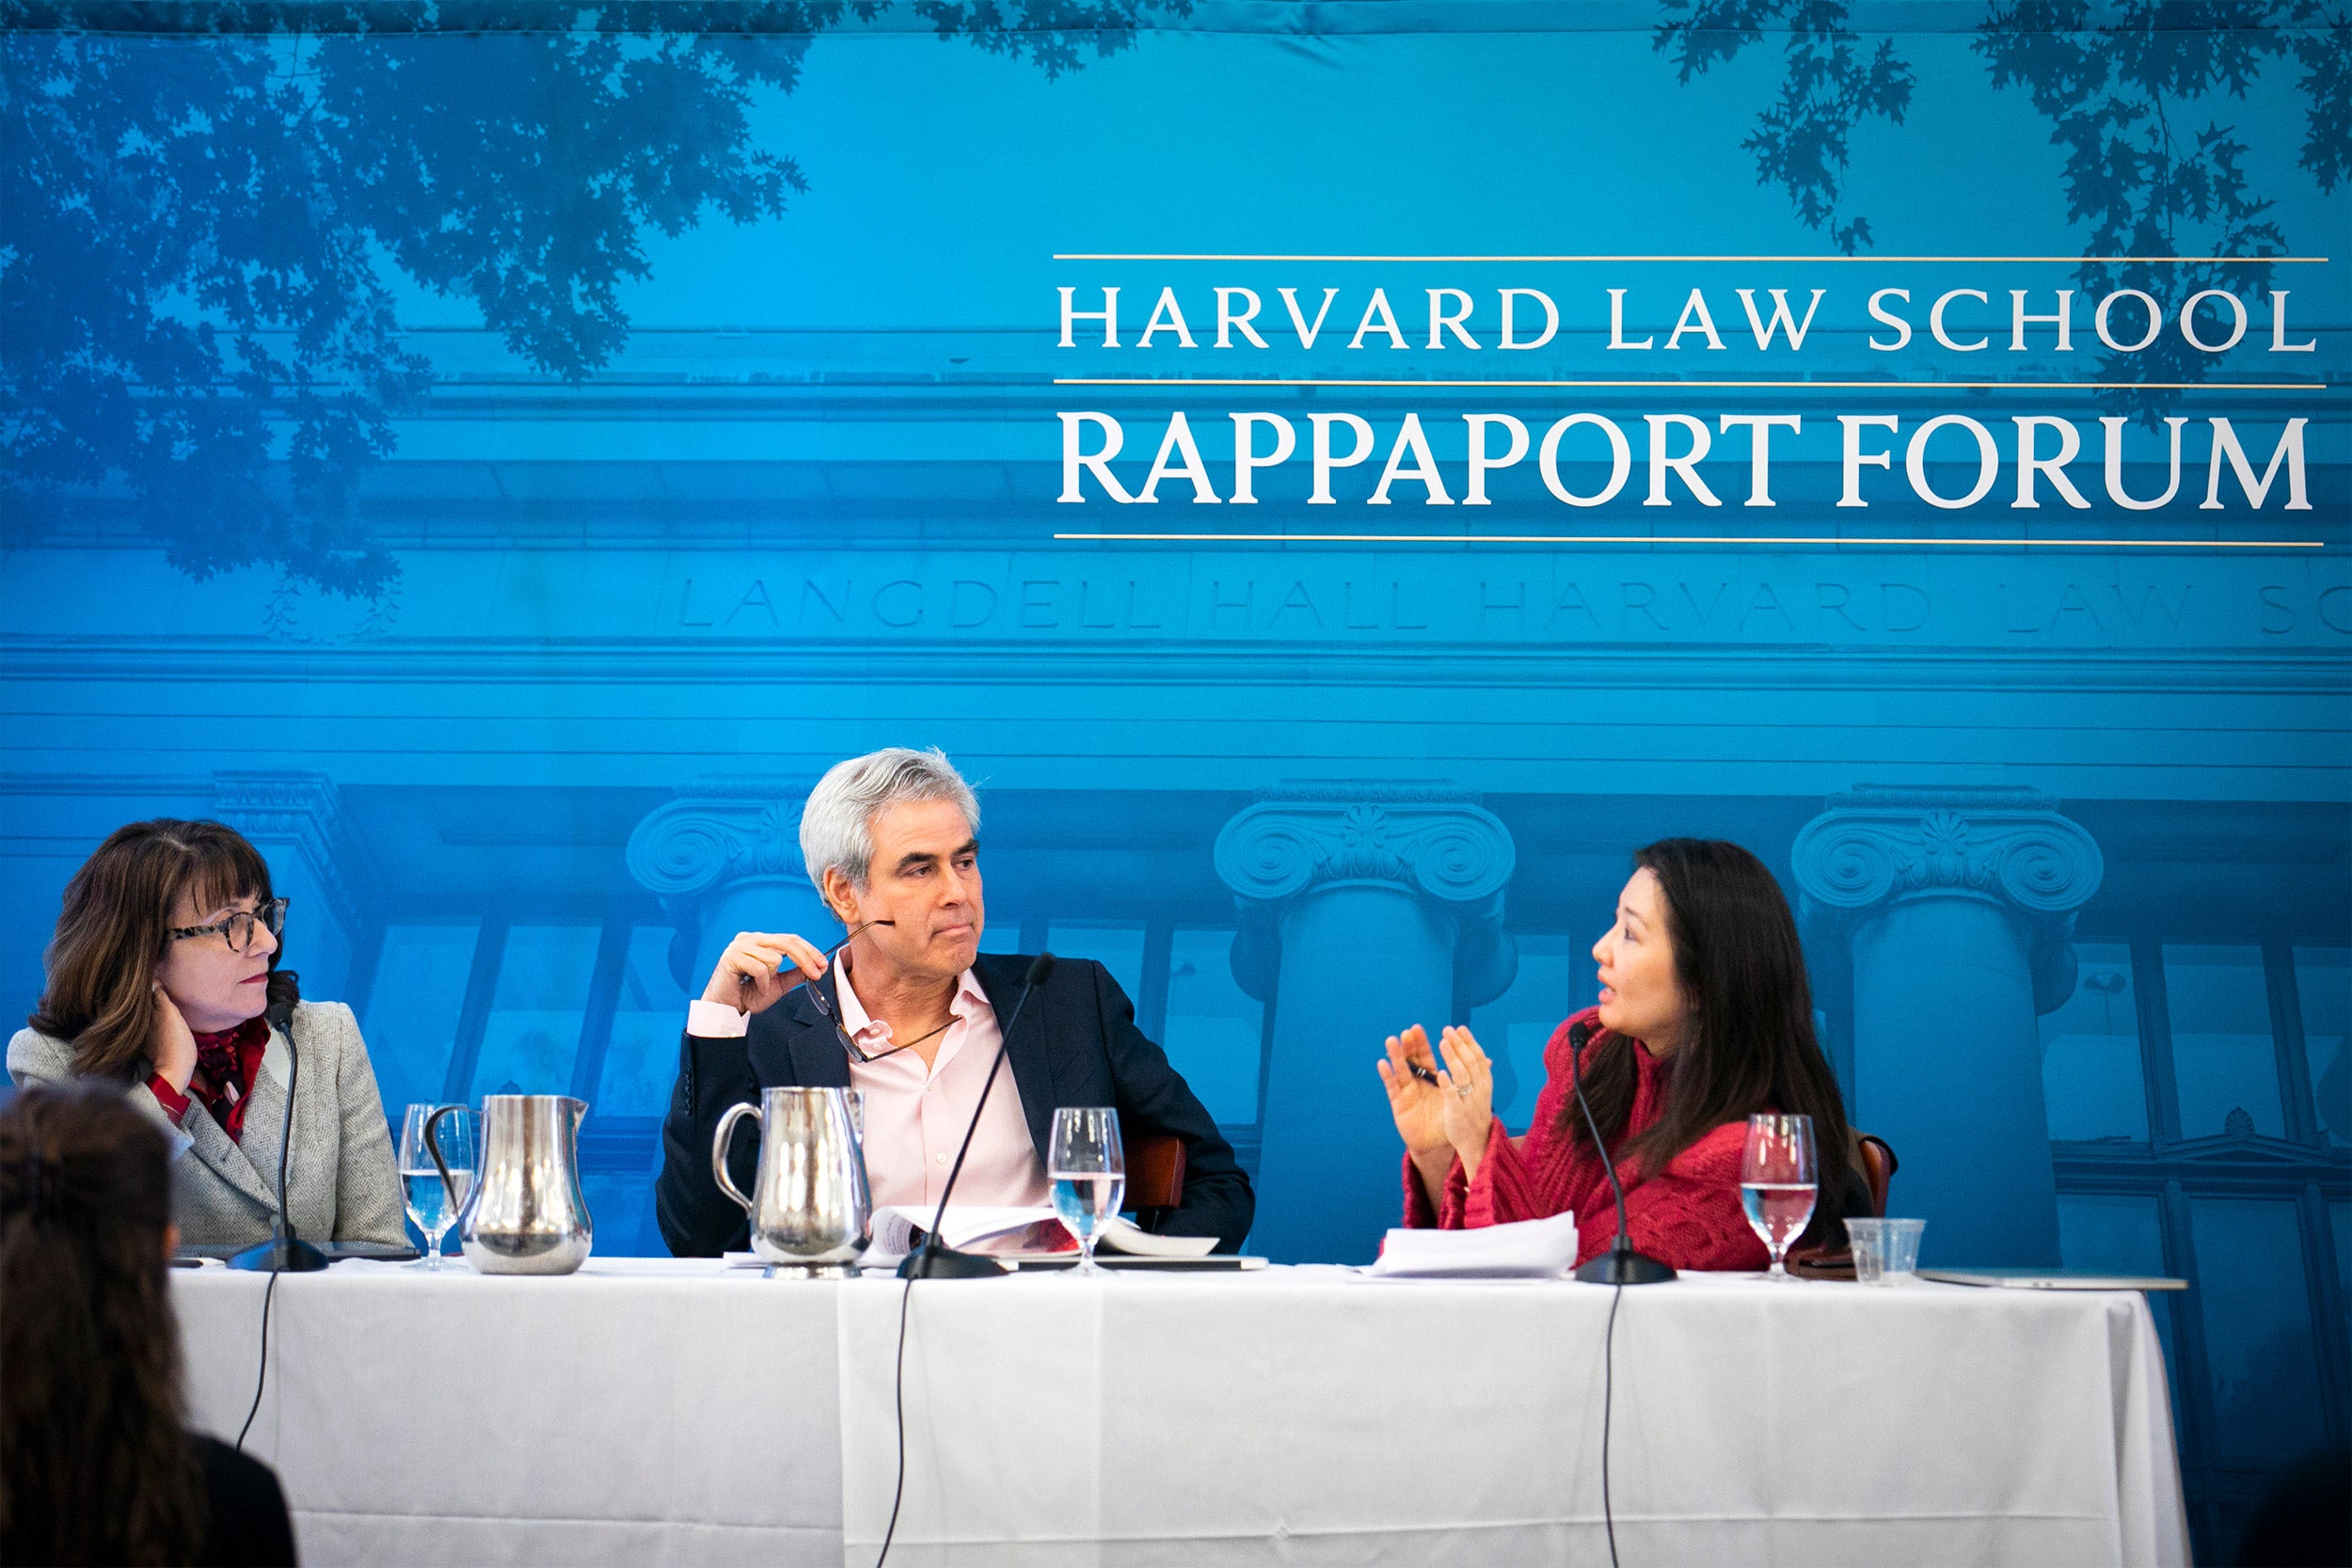 Panel of speakers at Harvard Law School.